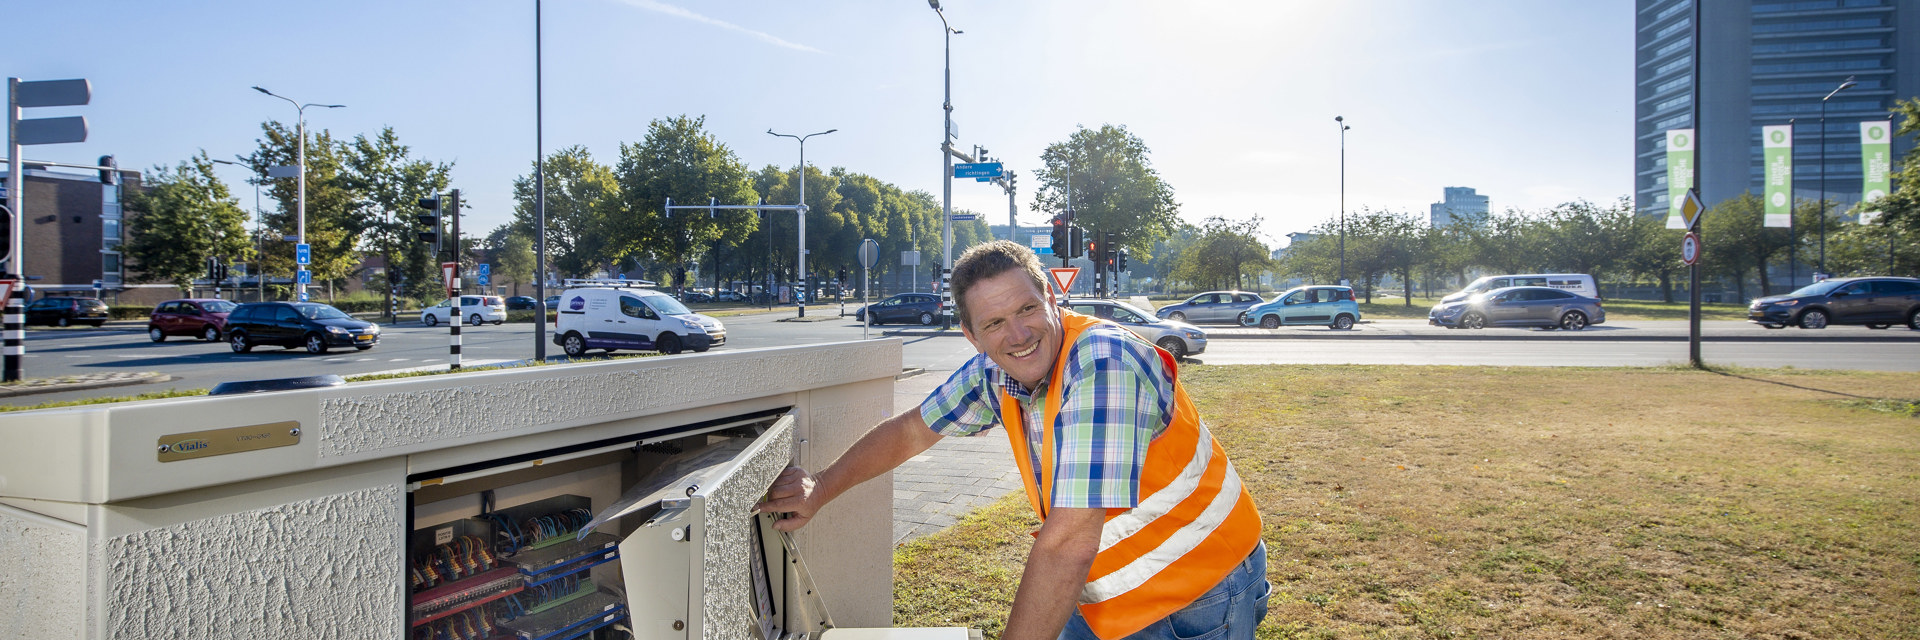 Foto lachende man voor kastje iVRI Den Bosch